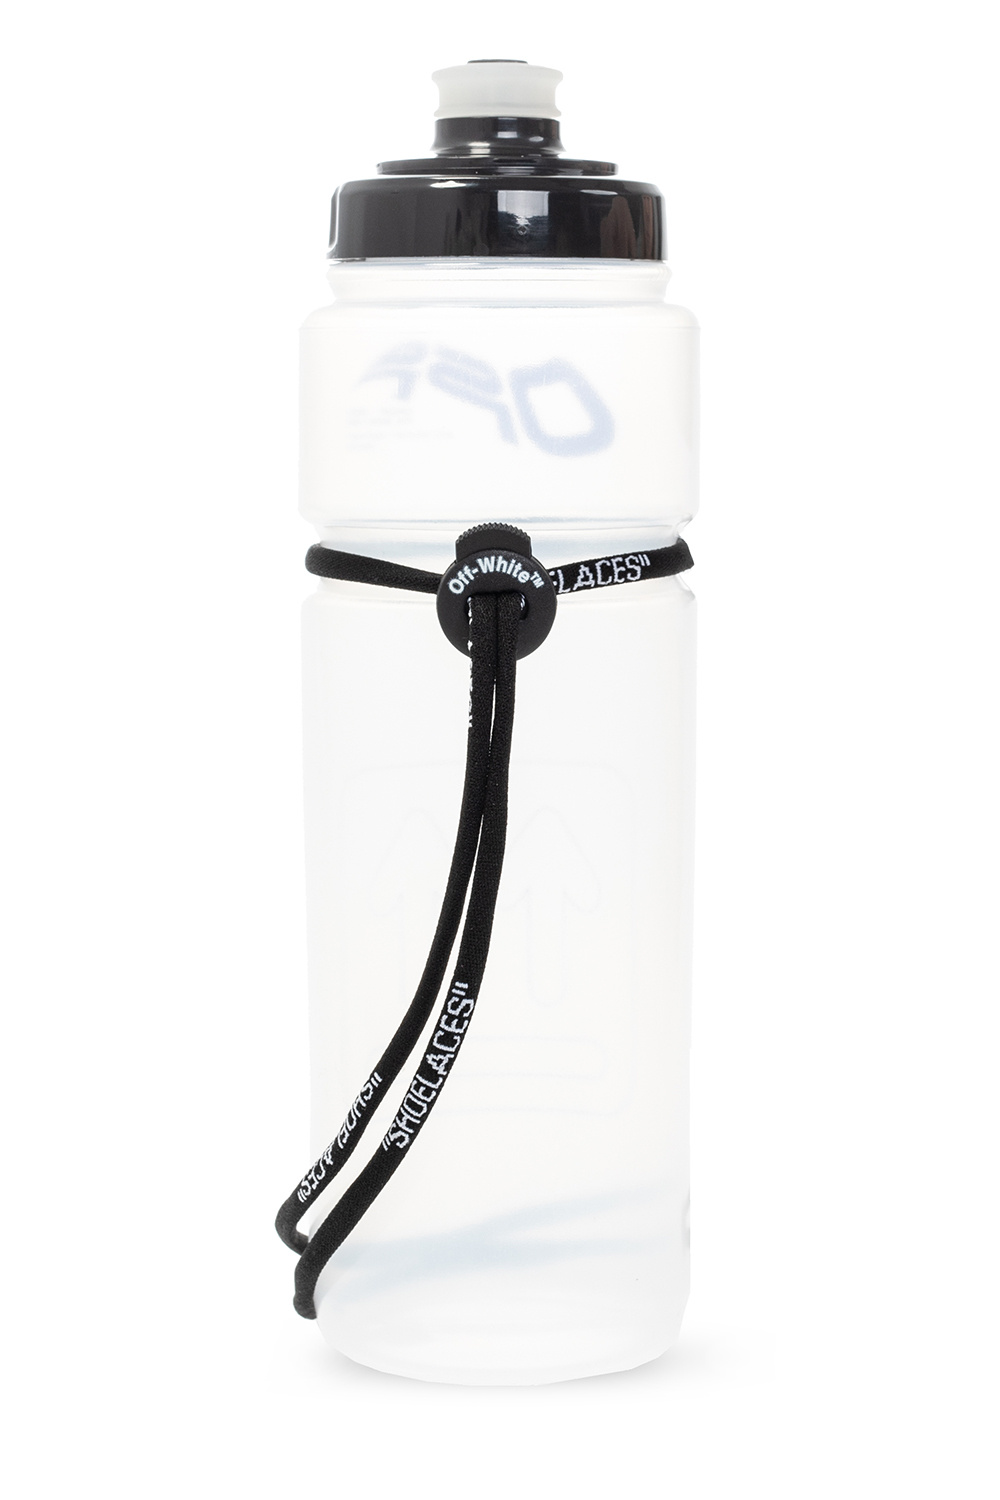 Designer LV cycling water bottle bidon